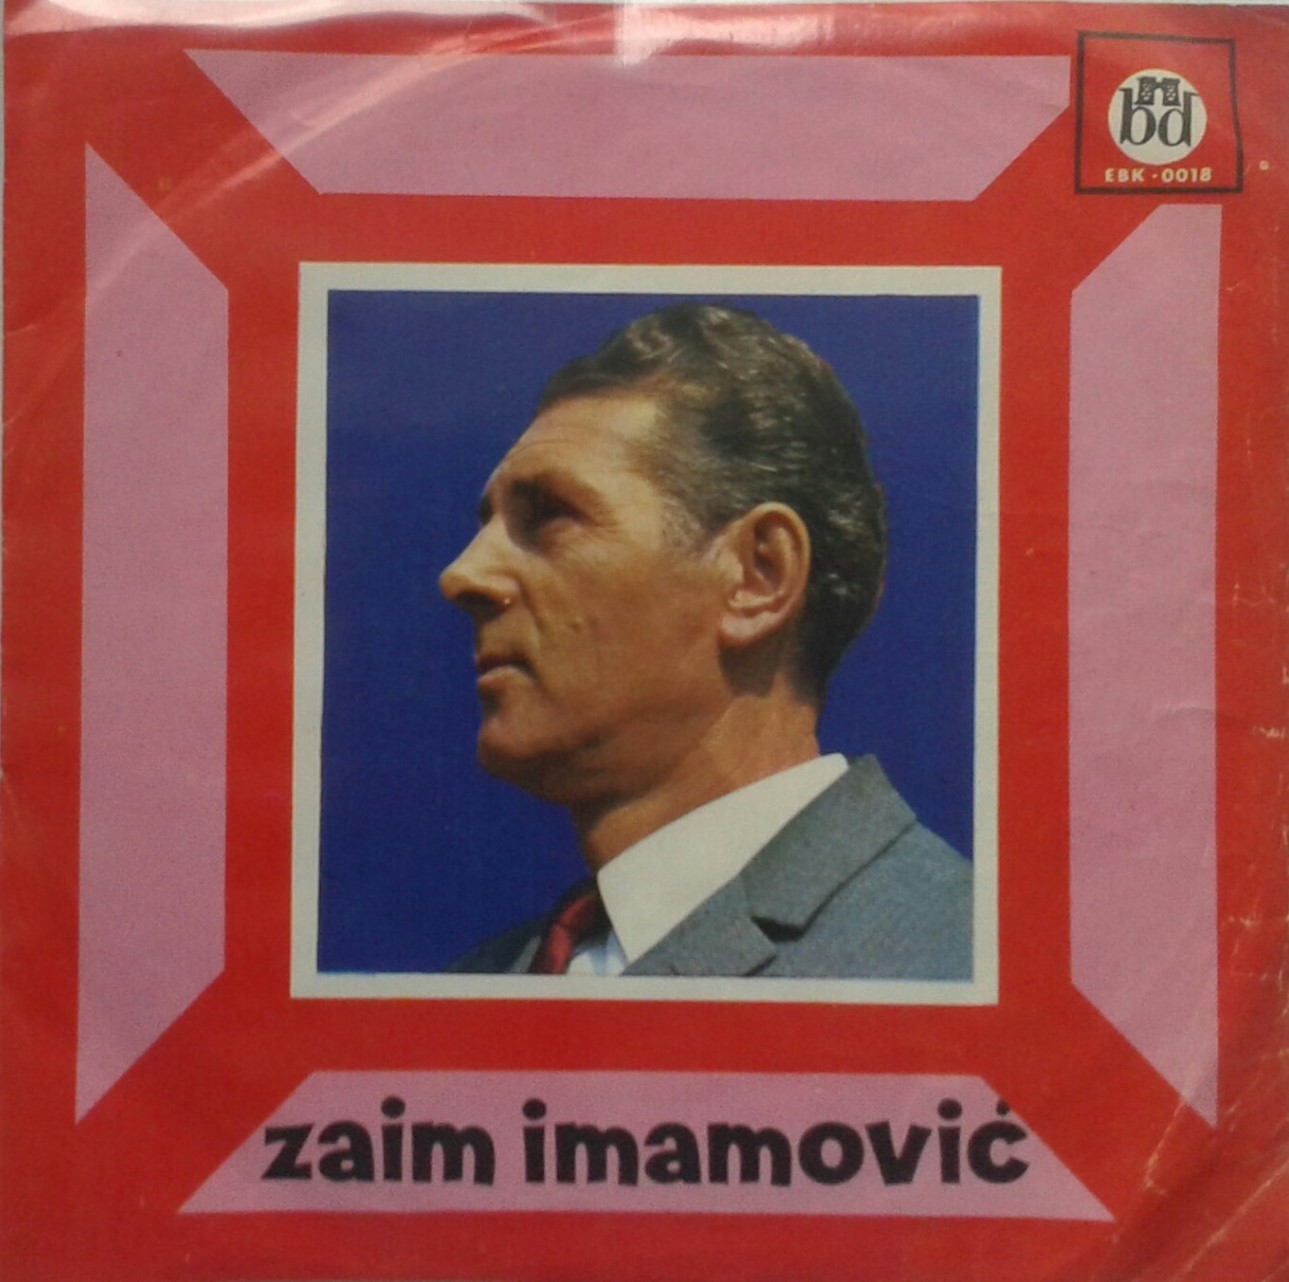 1968 Tajna ljubav - Album EP